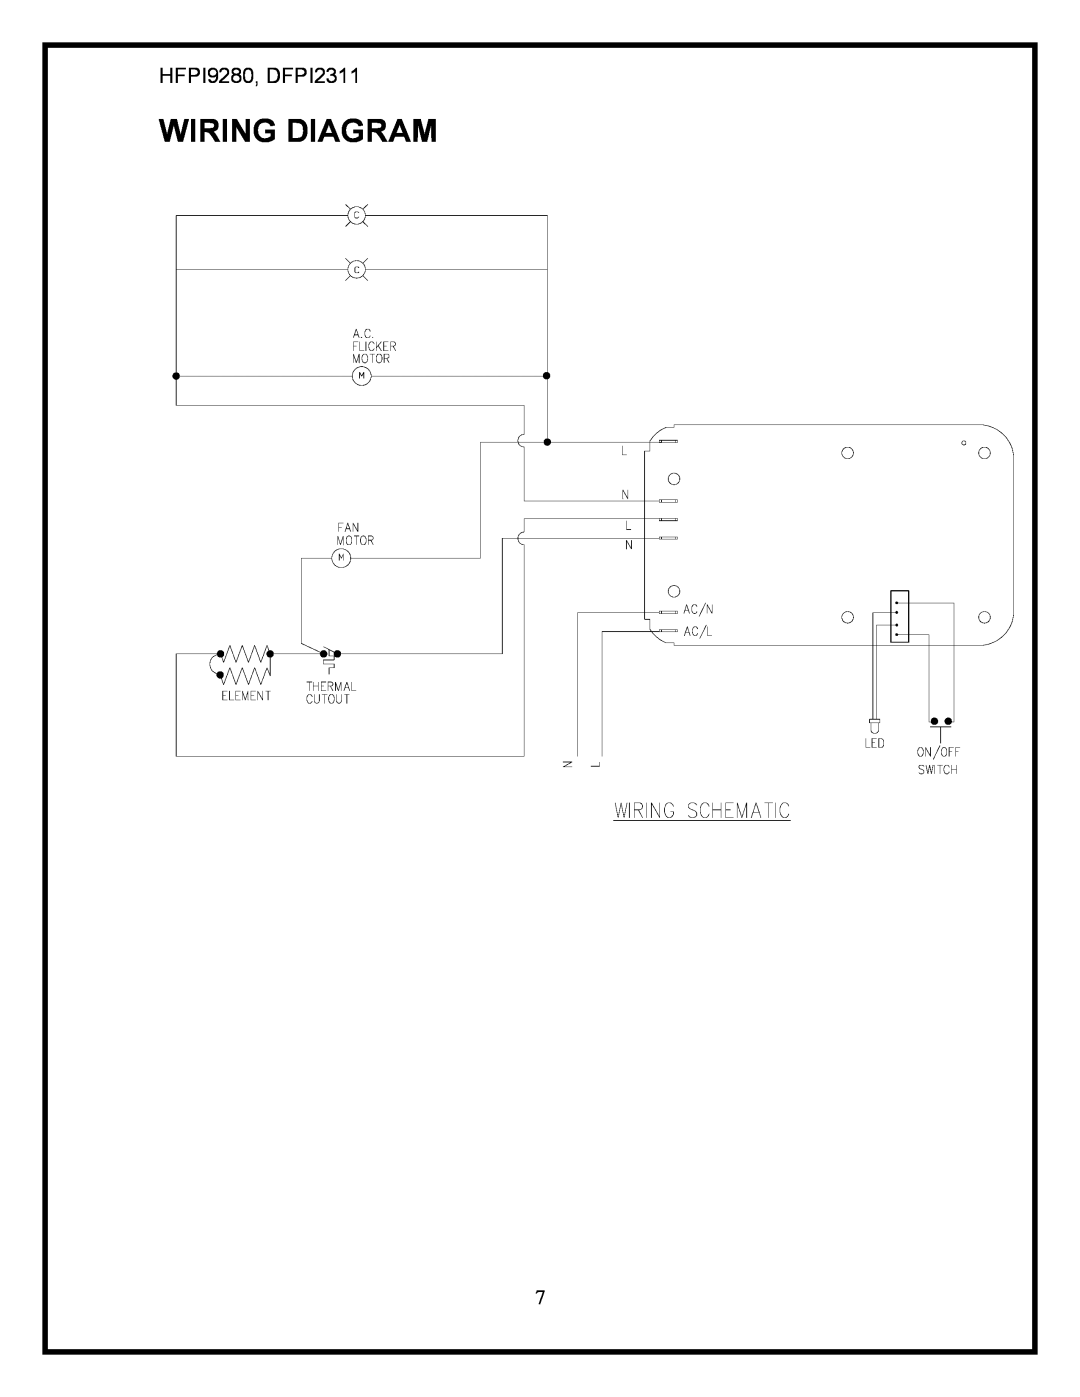 Dimplex service manual Wiring Diagram, HFPI9280, DFPI2311 